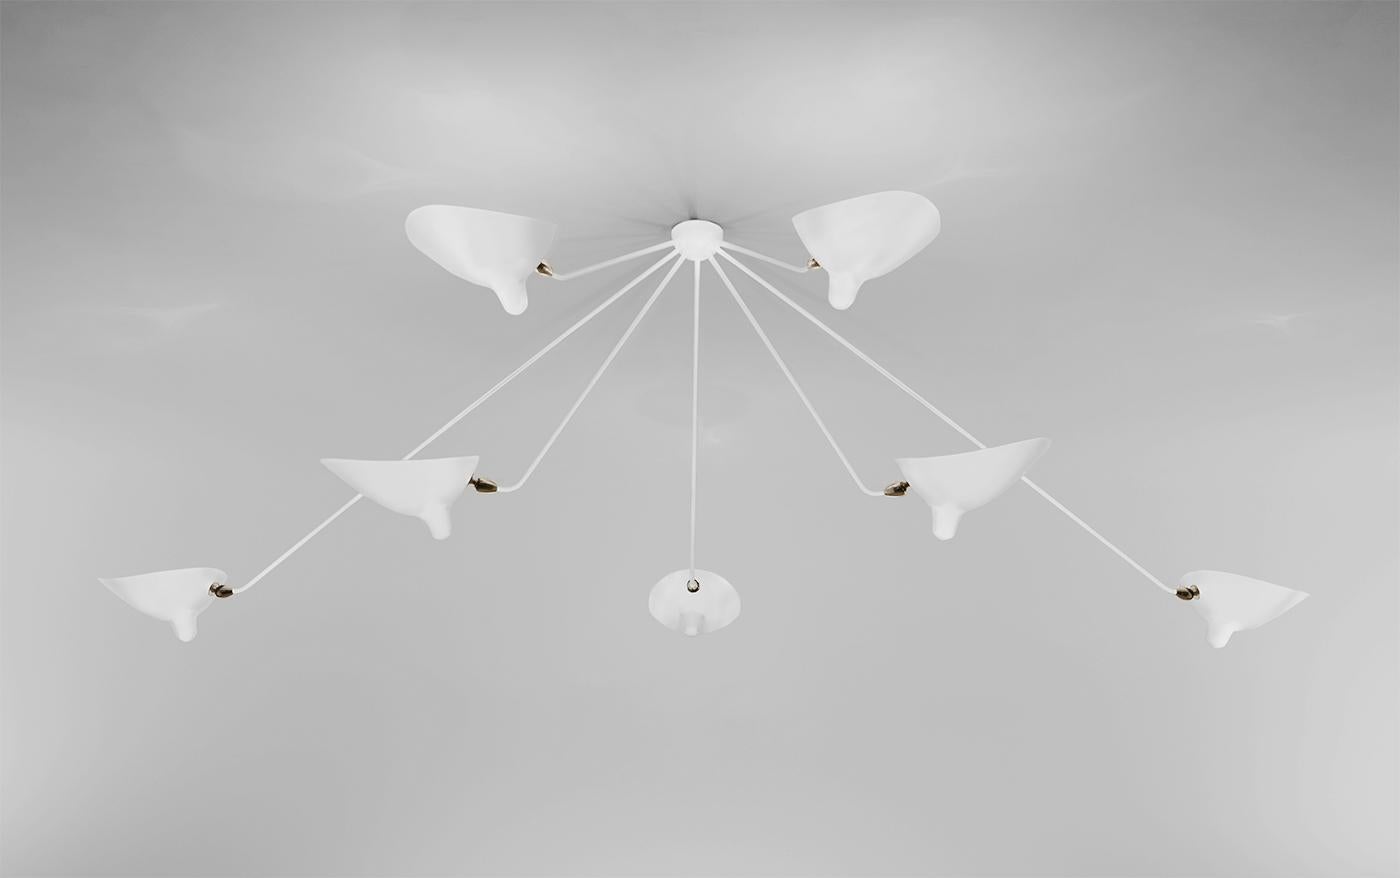 Plafonnier mural modèle 'seven fixed arms spider ceiling lamp' conçu par Serge Mouille en 1953.

Fabriqué par les Editions Serge Mouille en France. La production des lampes, des appliques et des lampadaires est réalisée de manière artisanale avec